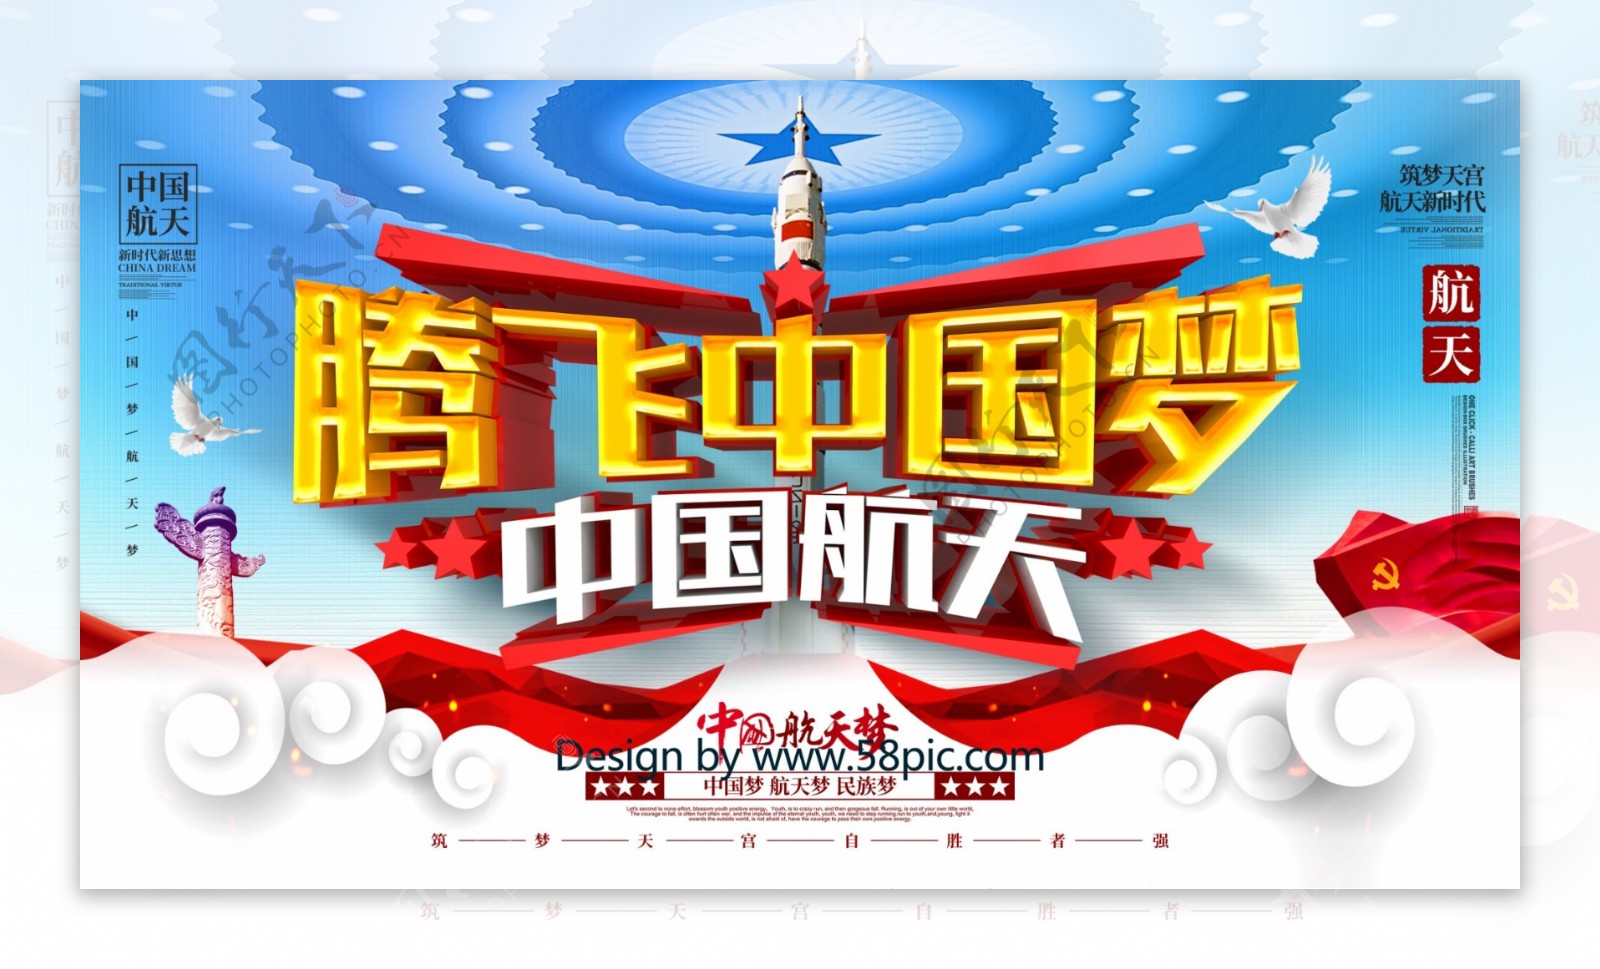 C4D创意大气腾飞中国梦中国航天宣传展板